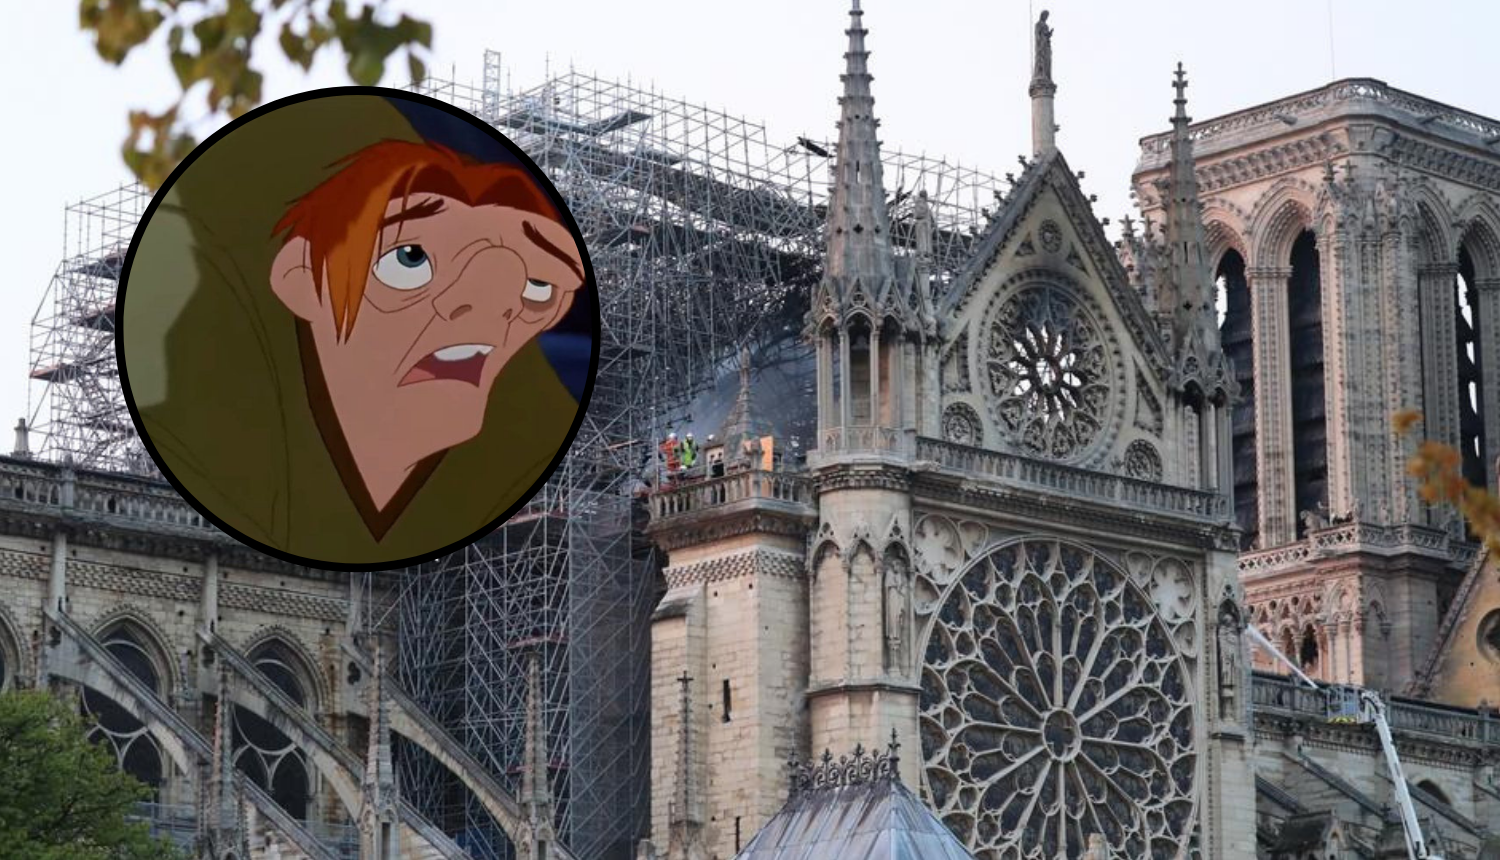 Nakon požara: Svi 'poludjeli' za Zvonarom crkve Notre Dame...